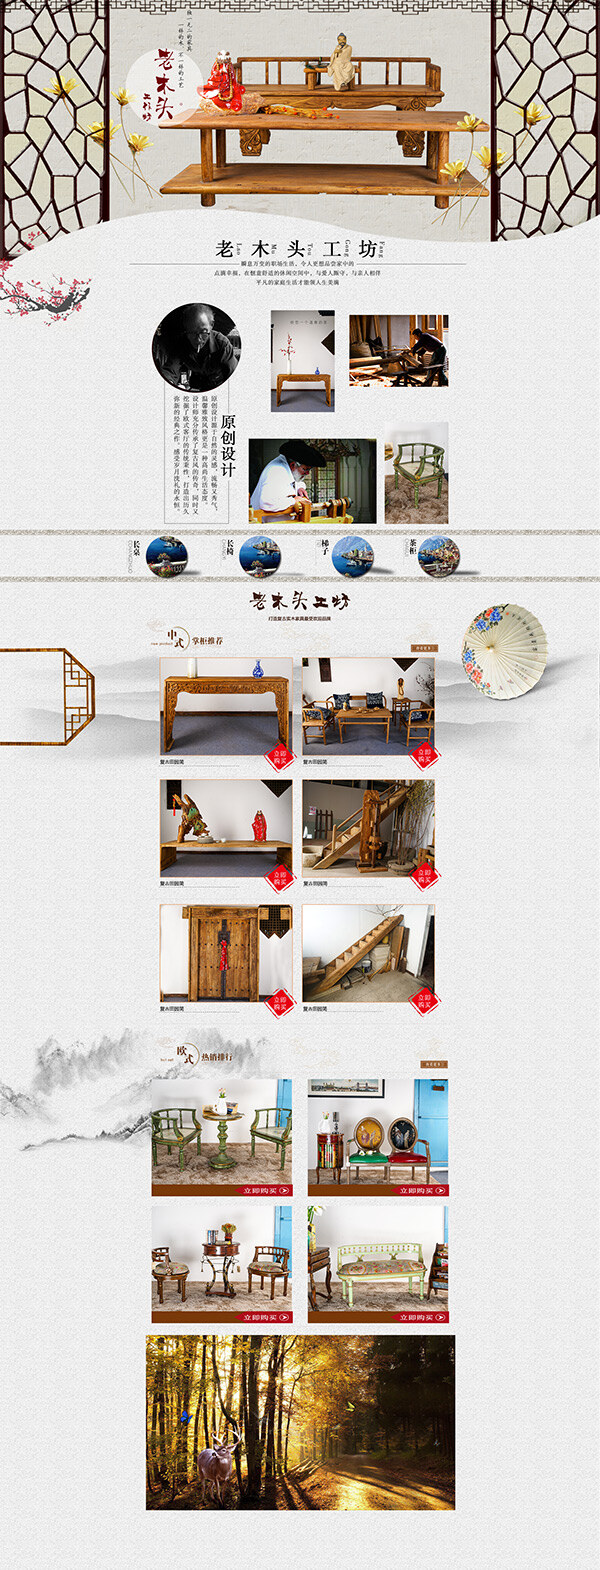 中国 风 淘宝 老 木头 家具店 铺 首页 装修 模板 家具 店铺 免费模板下载 白色